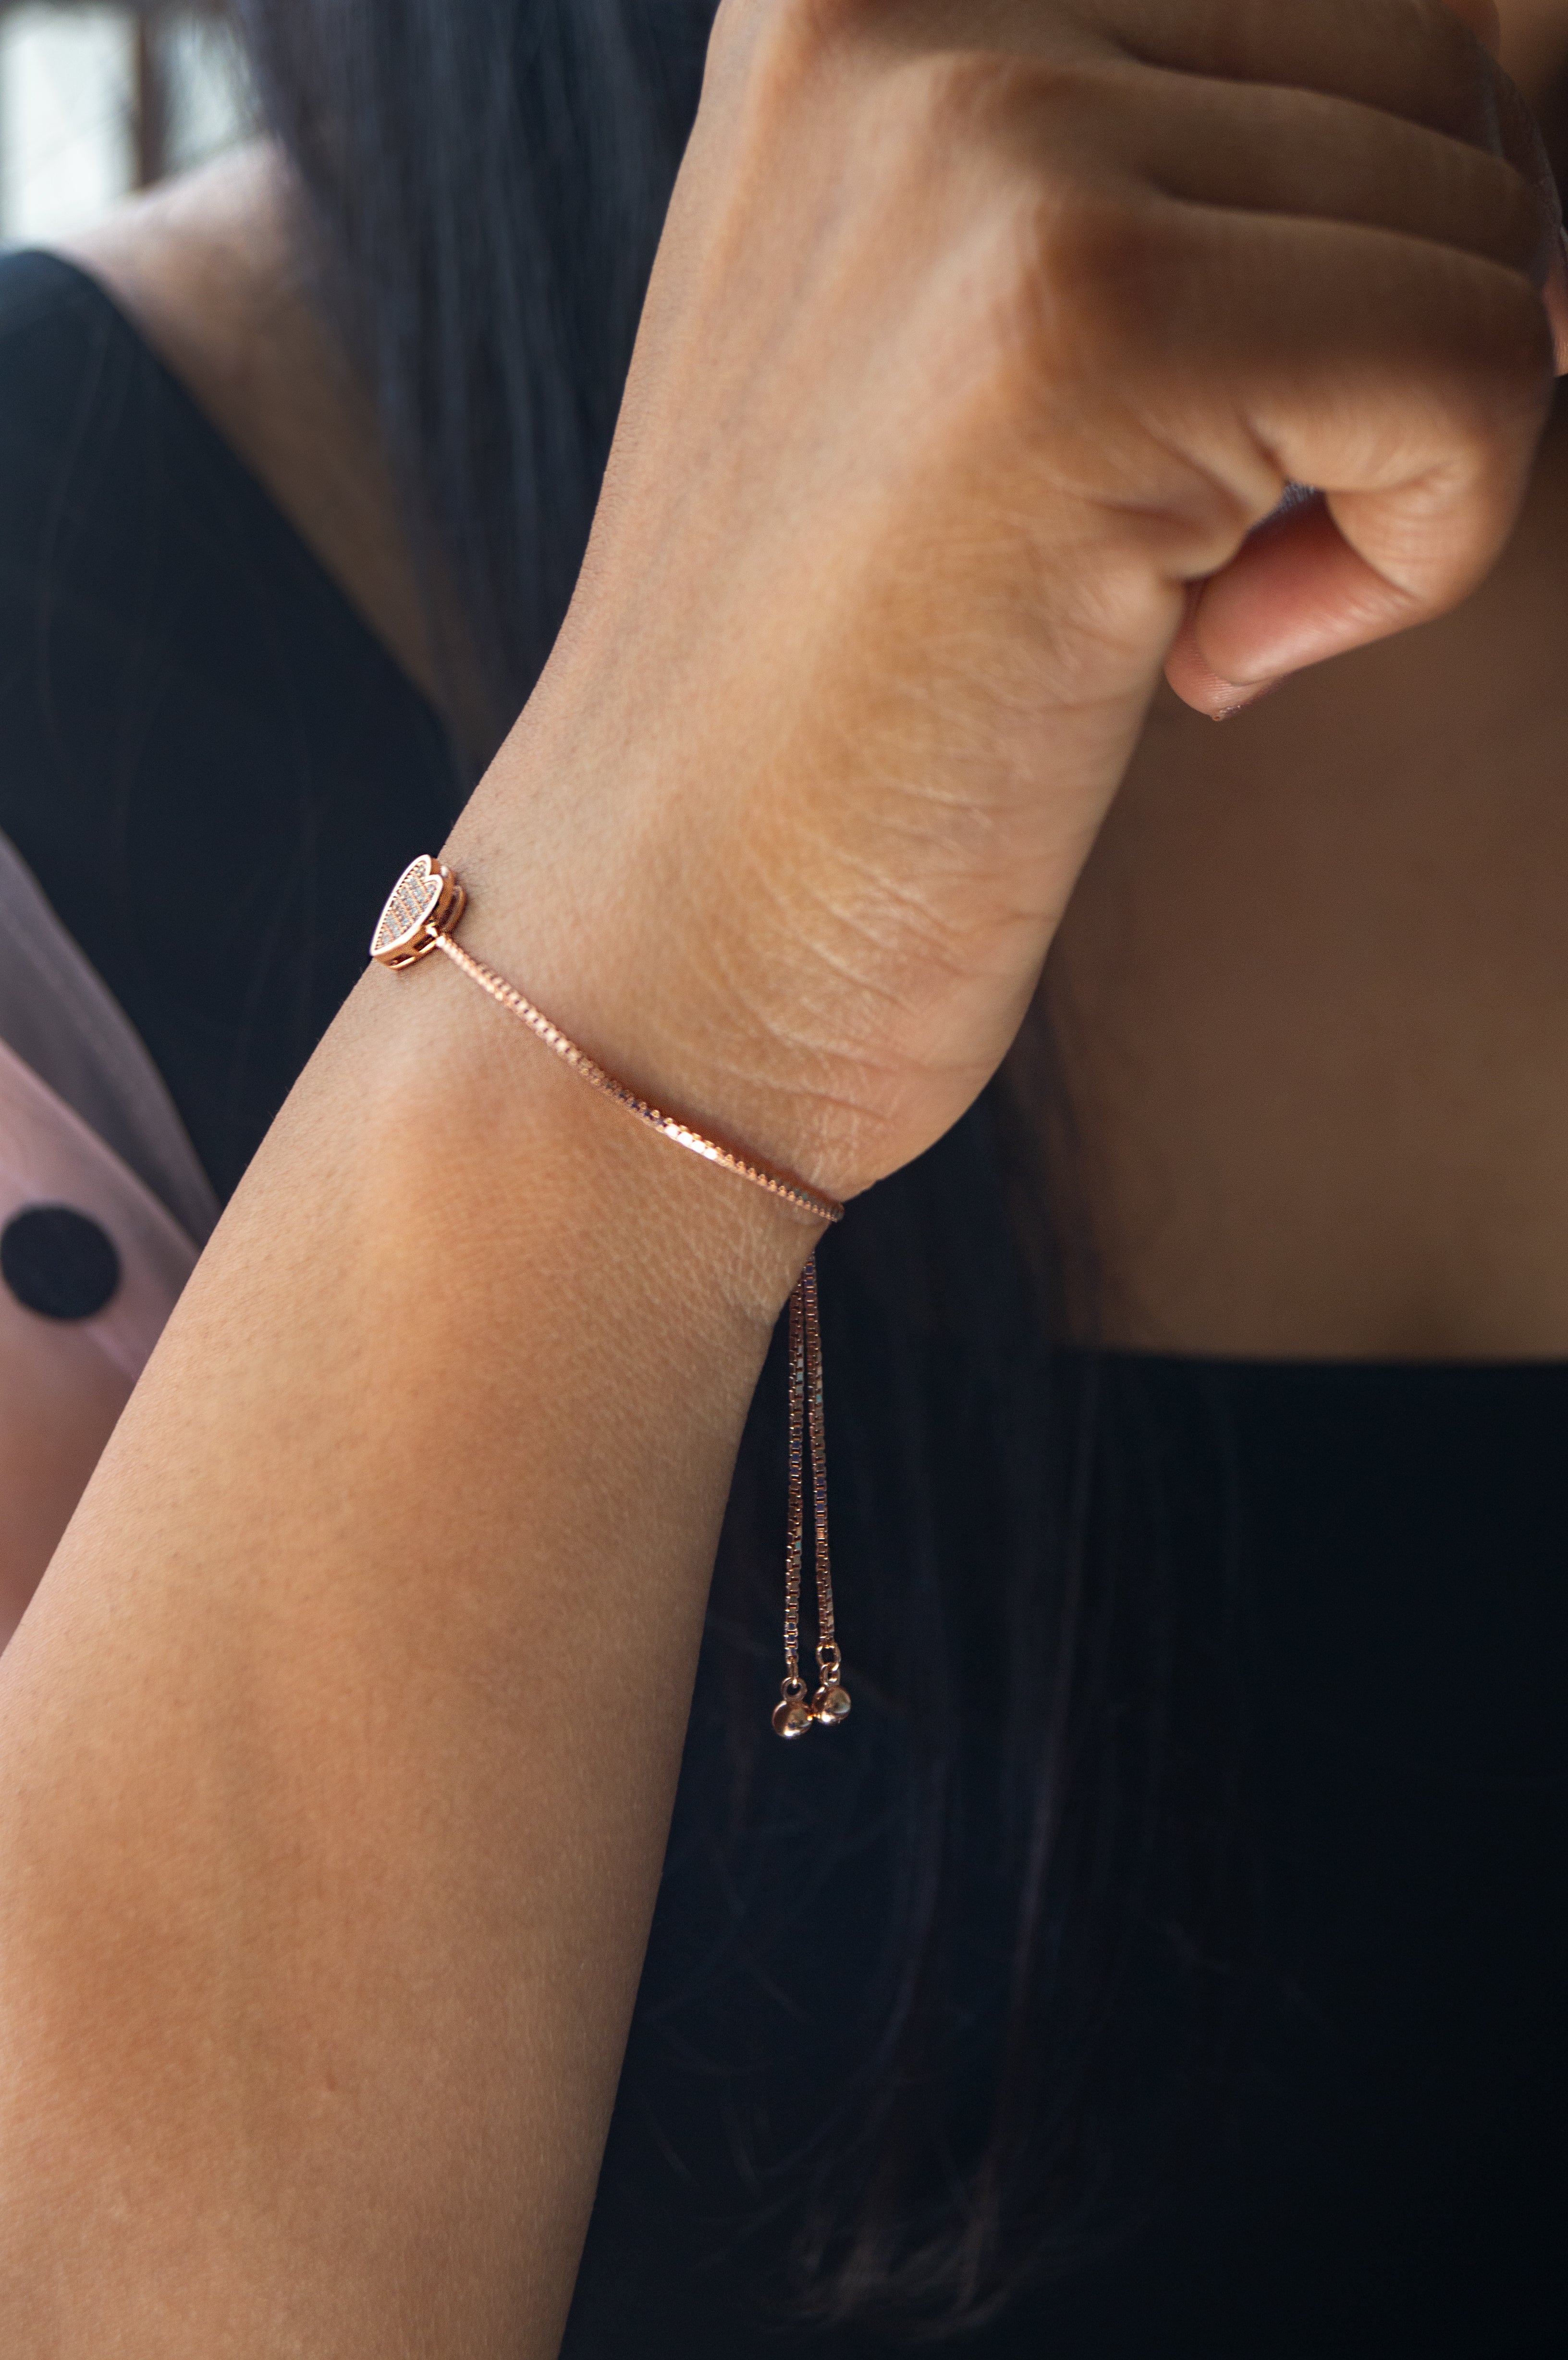 In Which Hand Should Girls Wear Bracelet? | Alto'di Versi | Baltic Amber  Jewelry – Alto 'di Versi - Healing Baltic Amber Jewelry Worldwide Shop